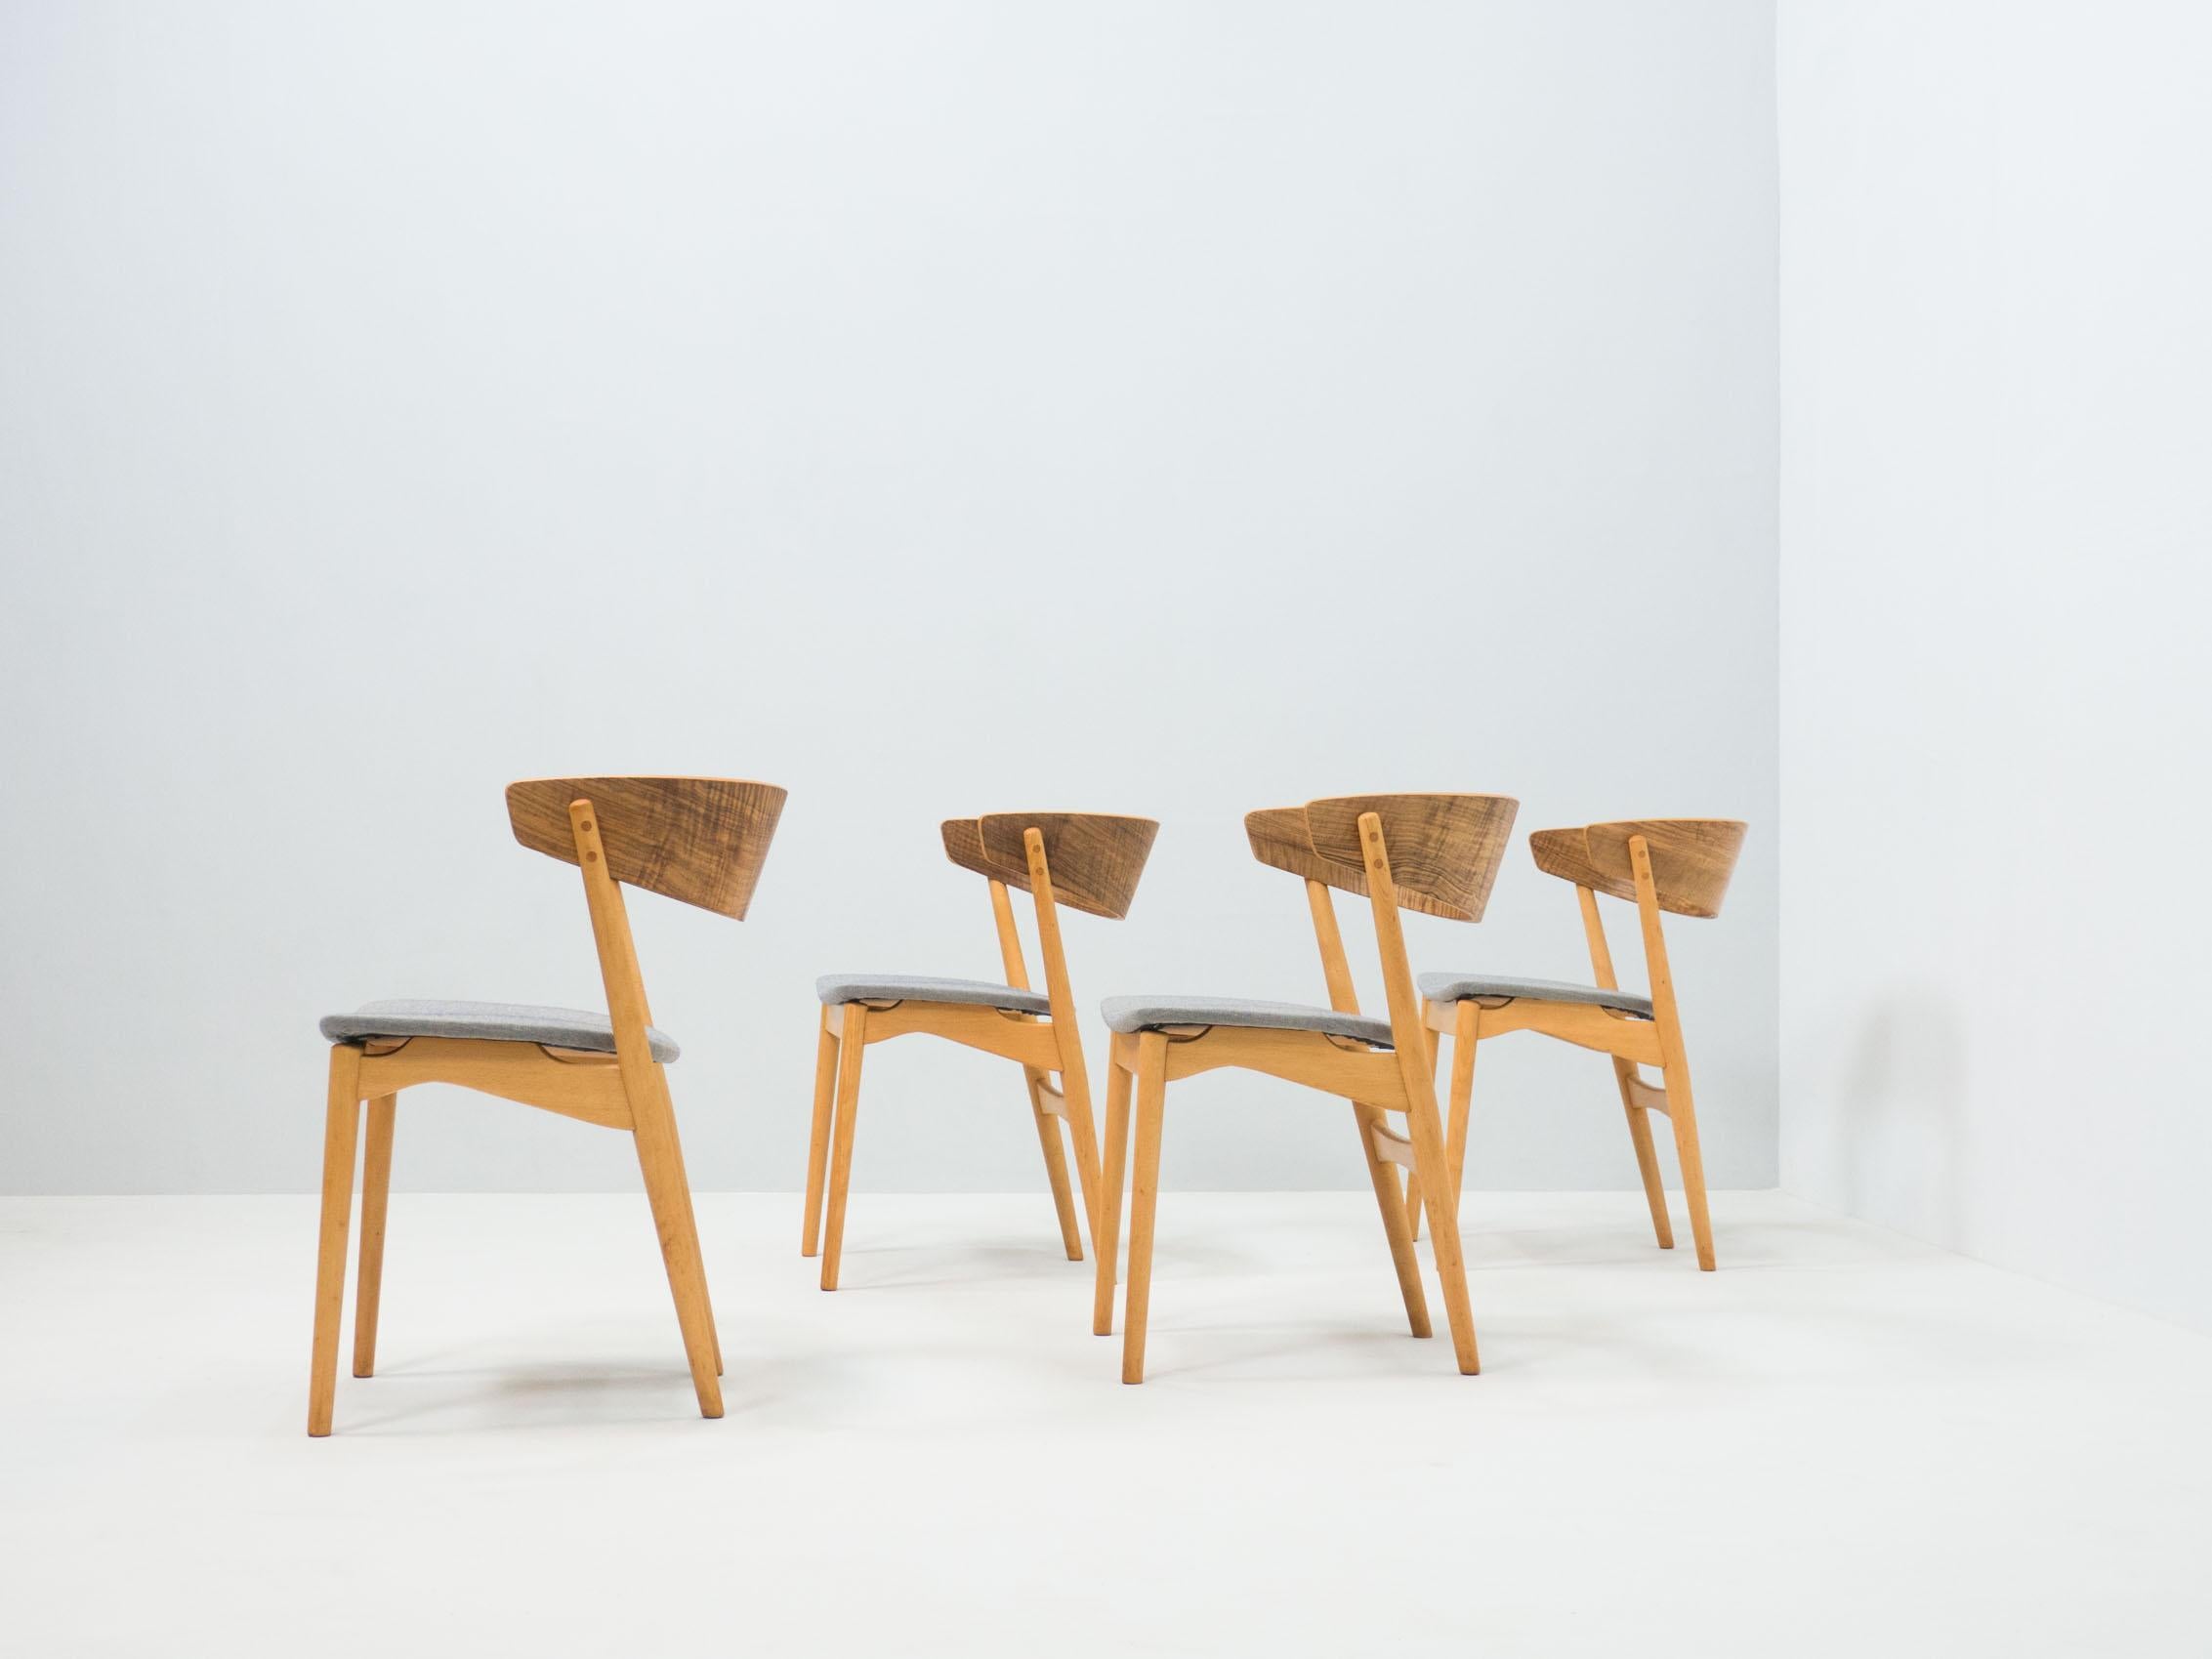 Ensemble de quatre chaises de salle à manger conçues par Helge Sibast, produites par Sibast Møbler, Danemark.

Les chaises portant le nom de modèle 